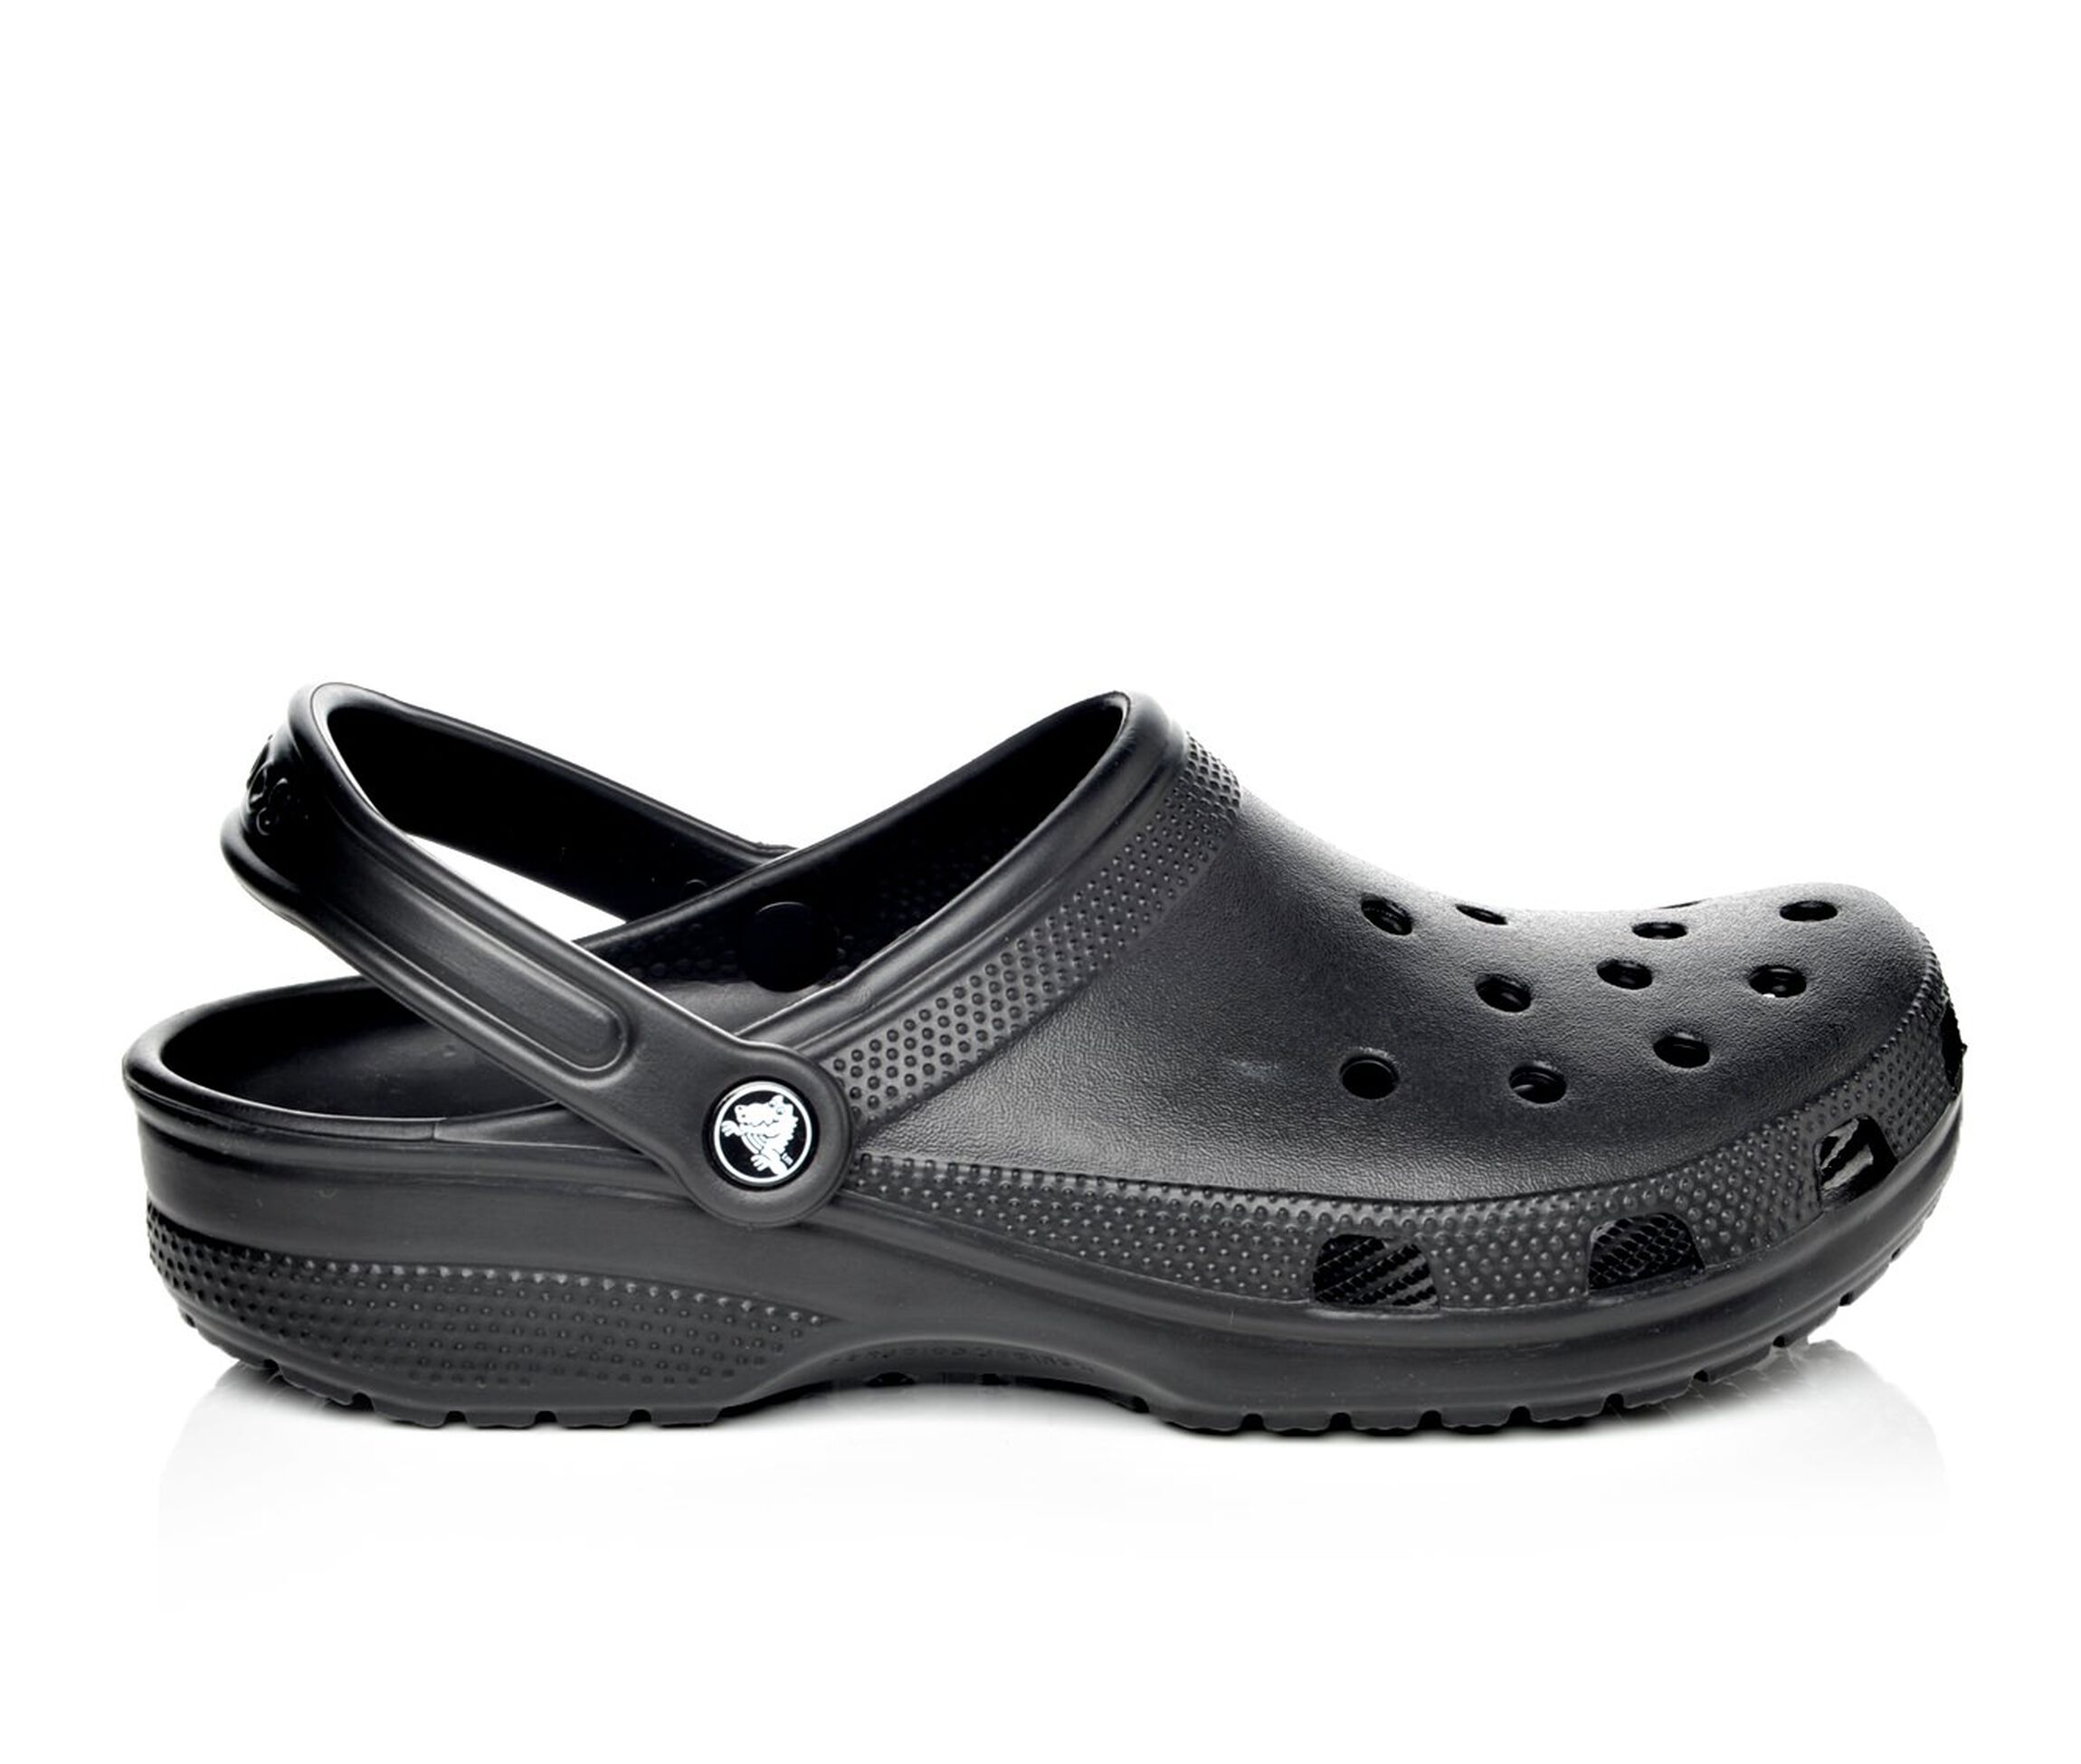 Men's Crocs Sandals | Shoe Carnival